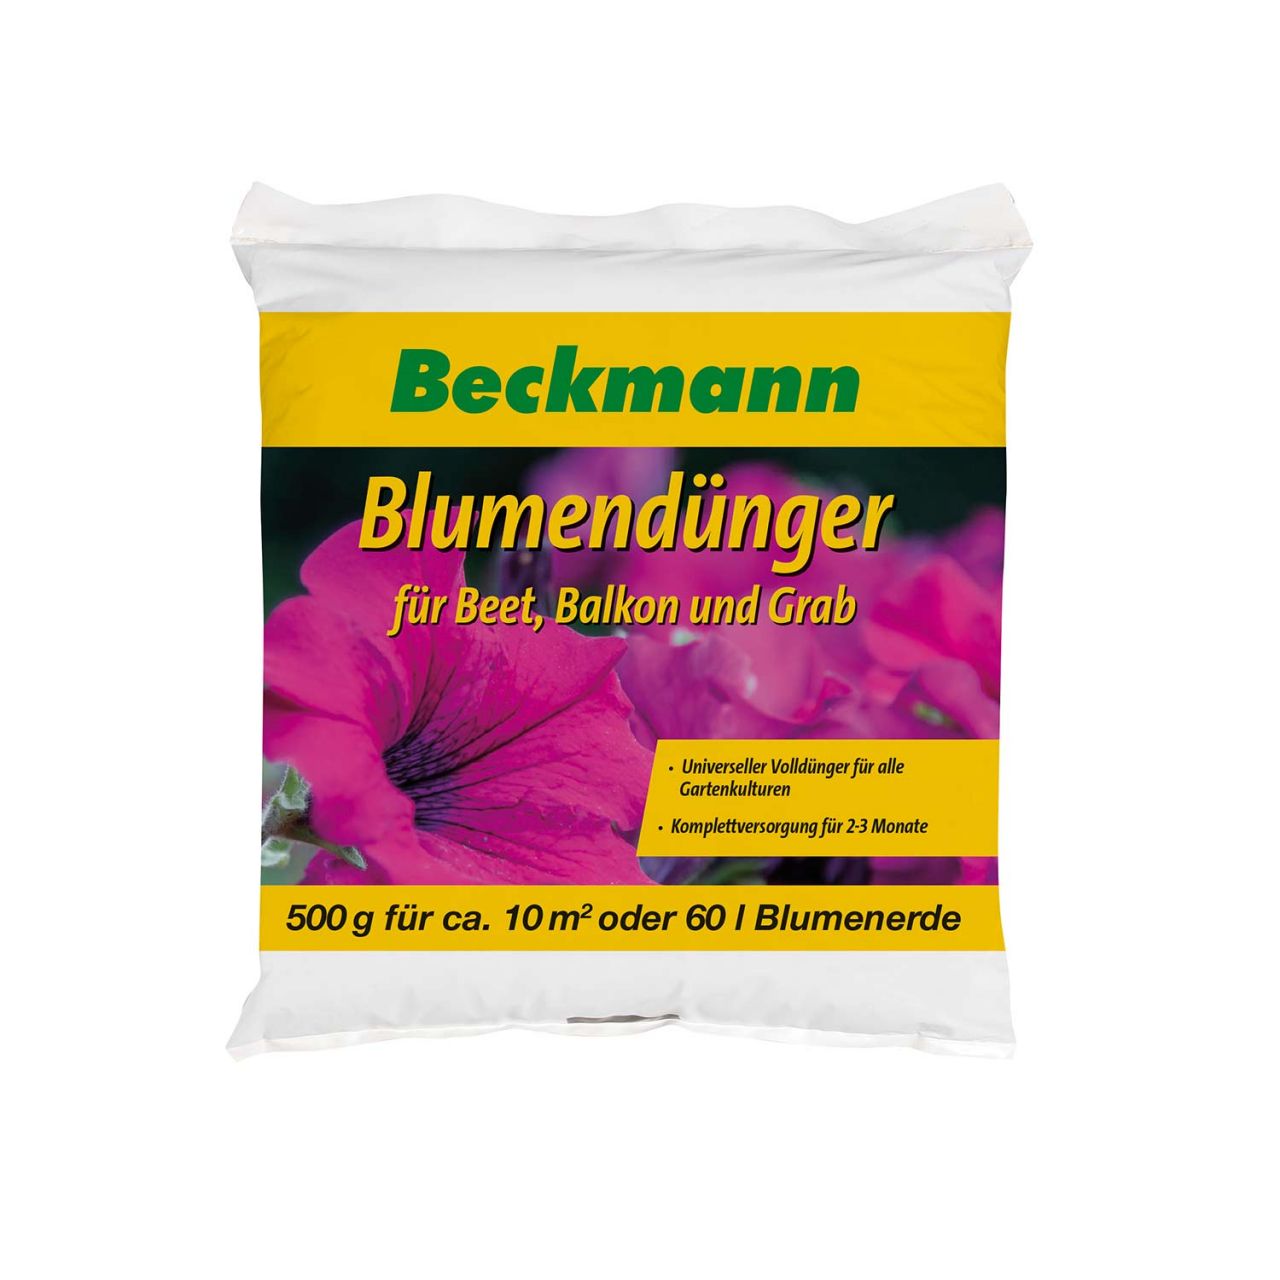 Blumendünger für Beet, Balkon & Grab – 500g – Beckmann